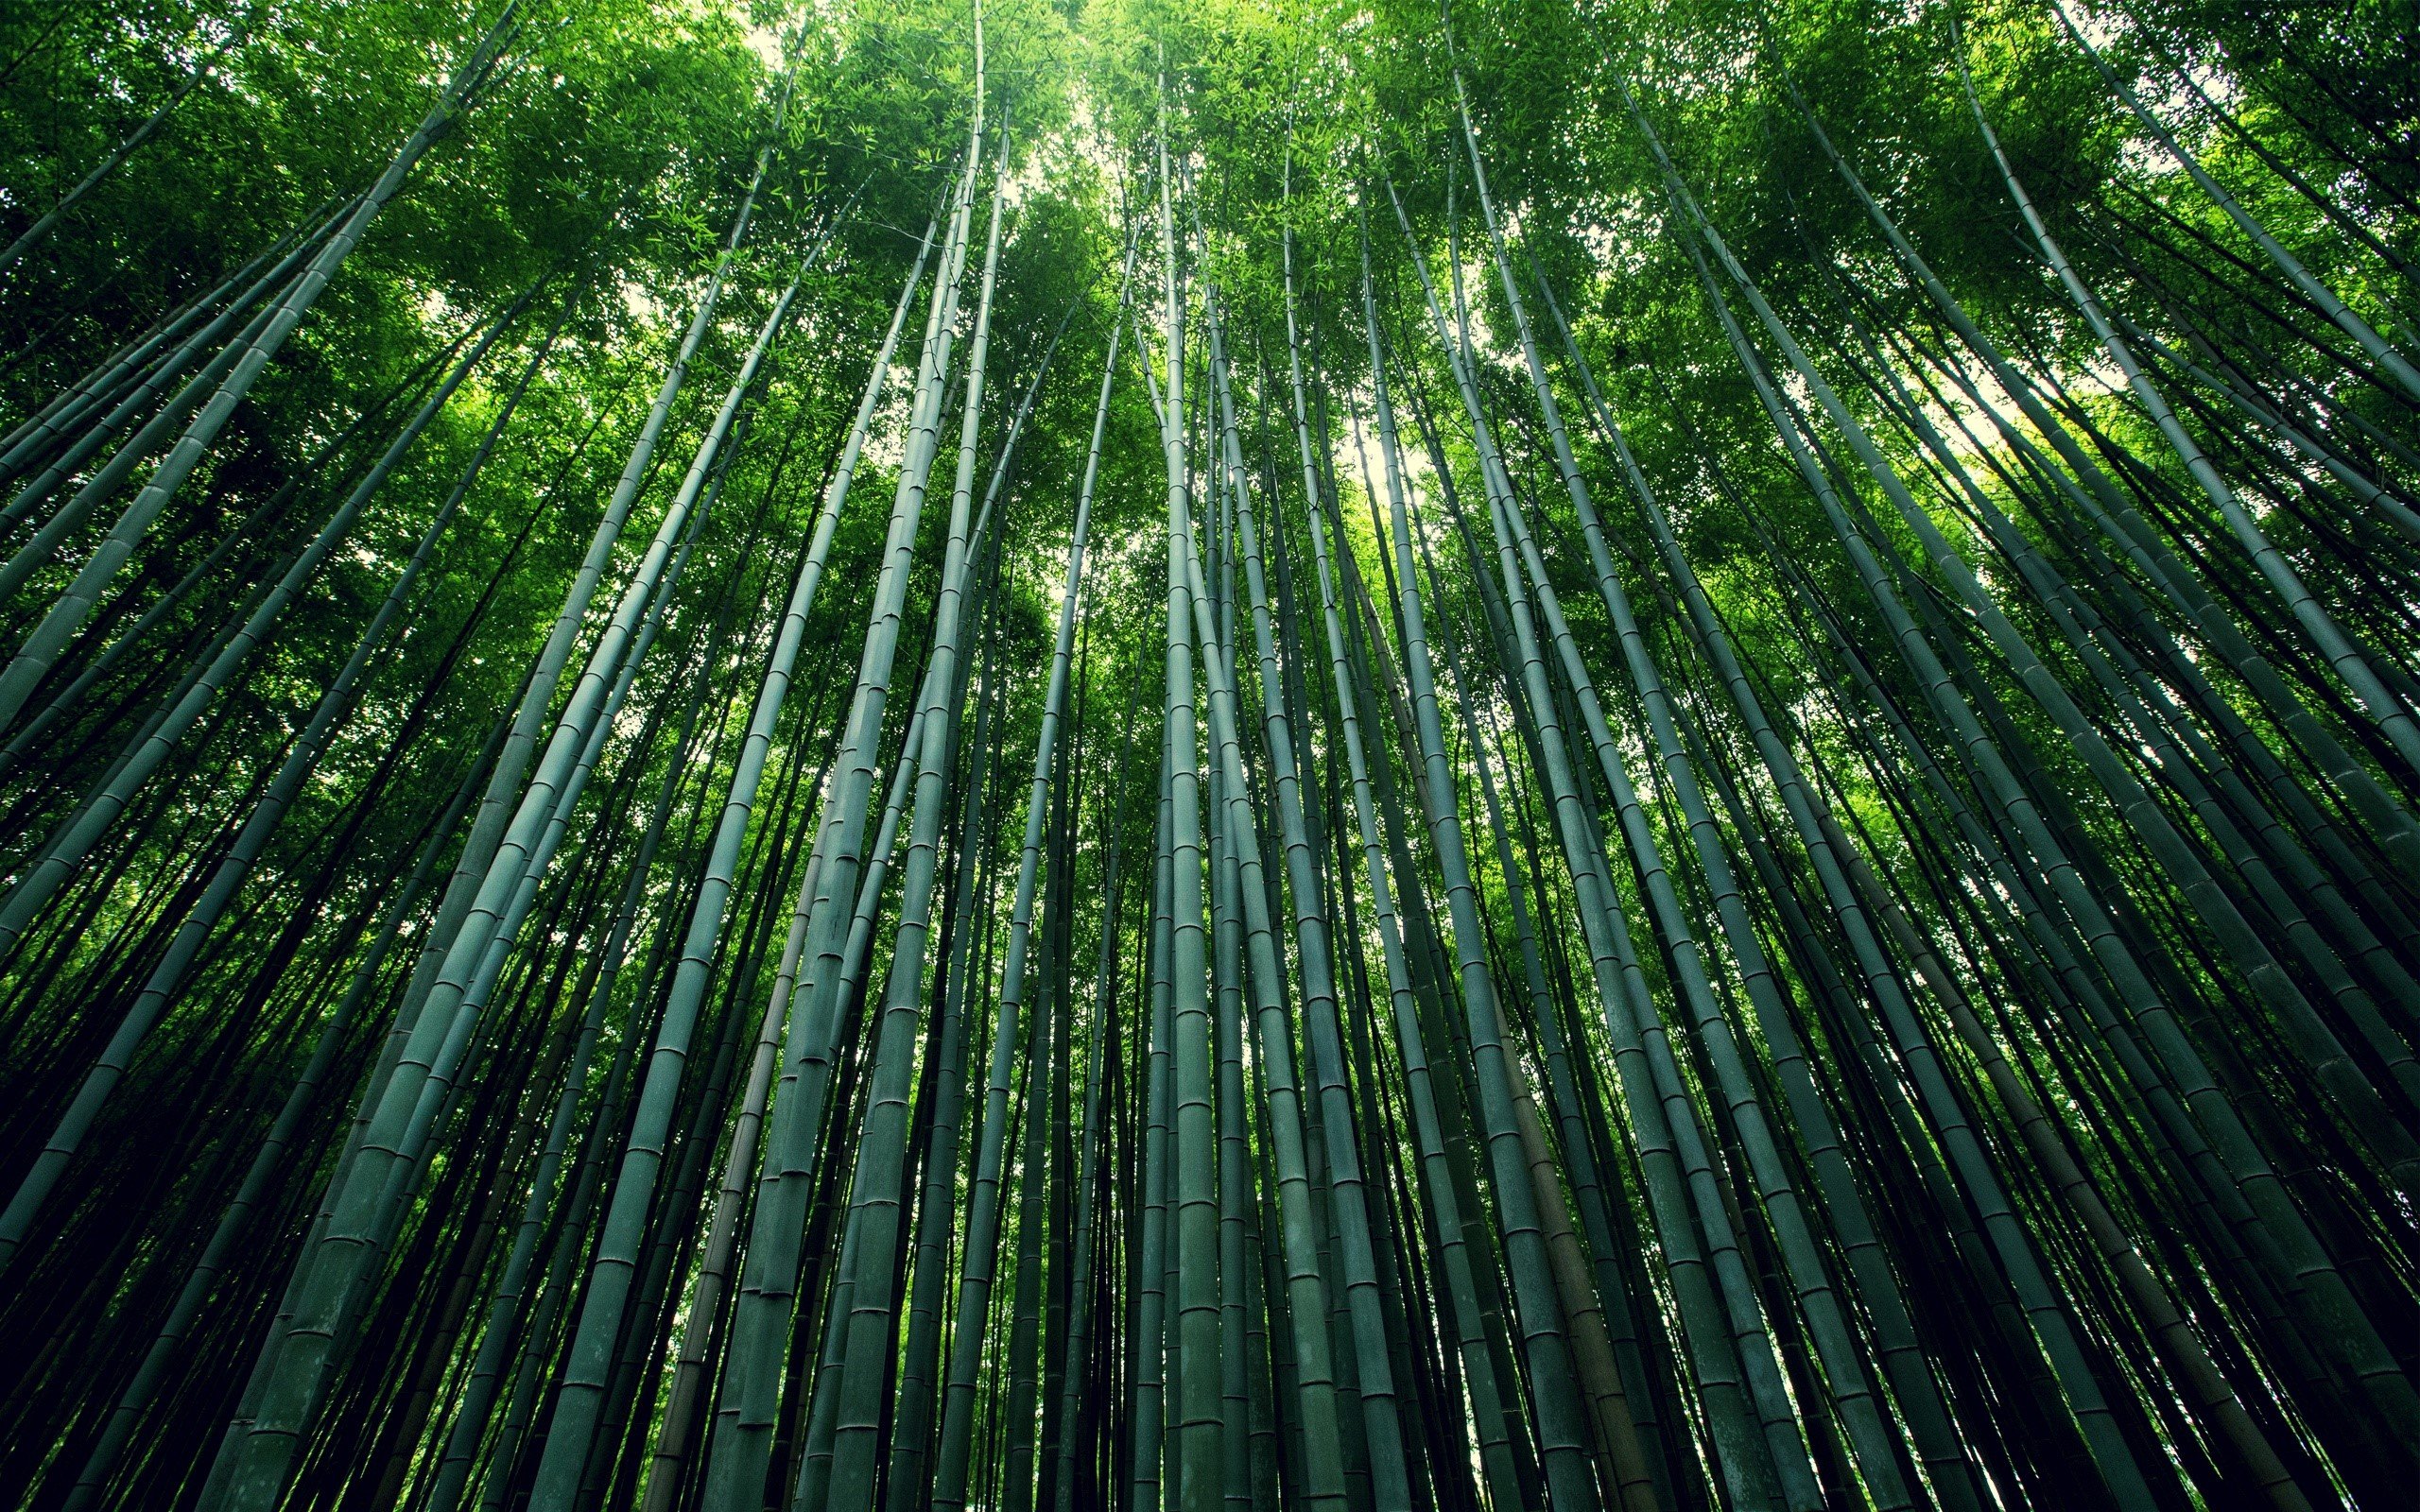 Fondos de pantalla Bosque de bamboo